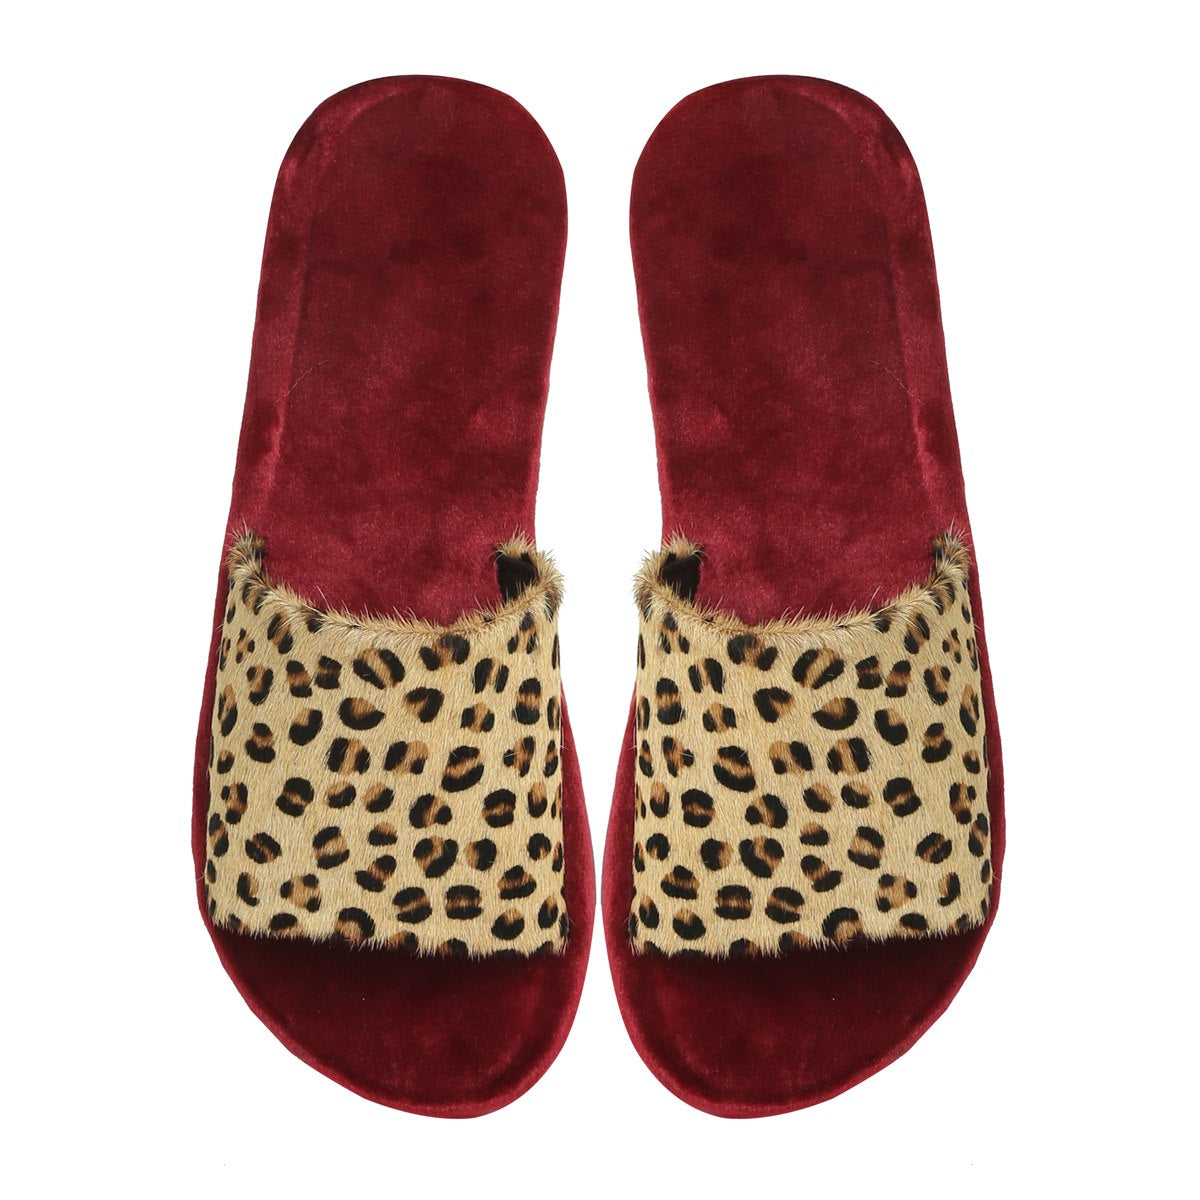 Cheetah Print Hairon Leather Strap Velvet Slide-In Slippers by Brune & Bareskin